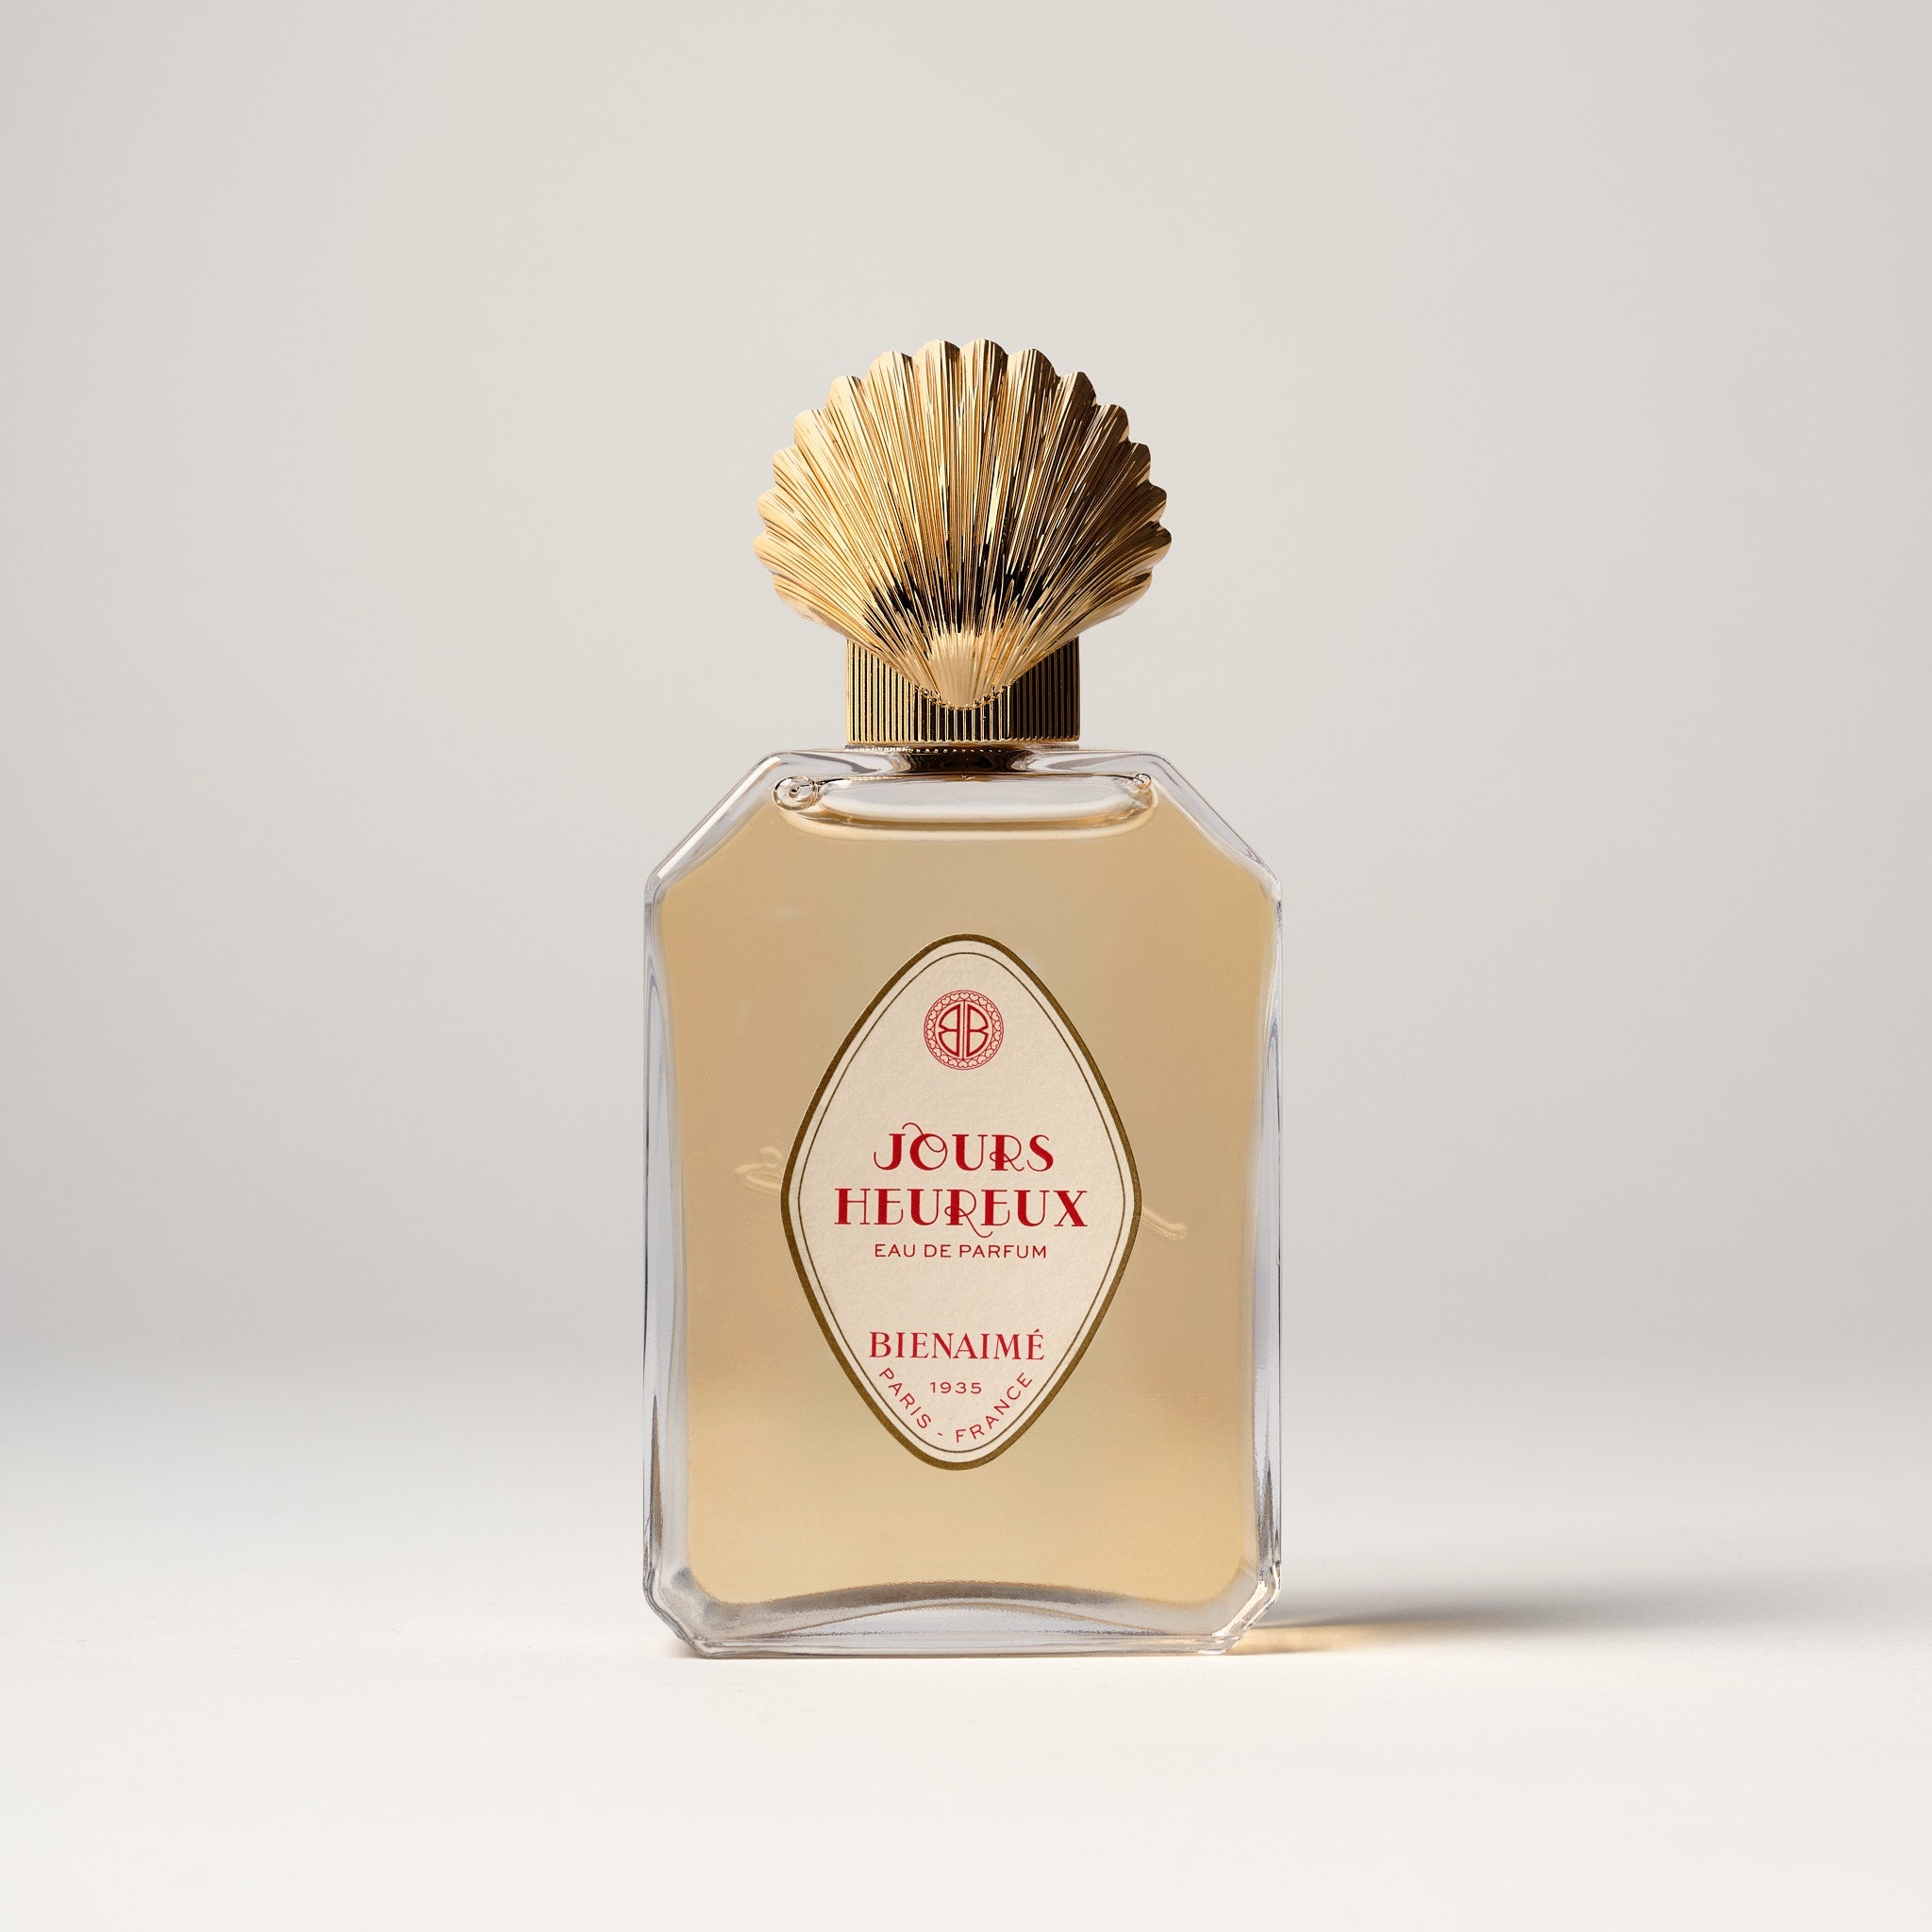 Jours Heureux 75ml Eau de Parfum by Bienaimé Packshot